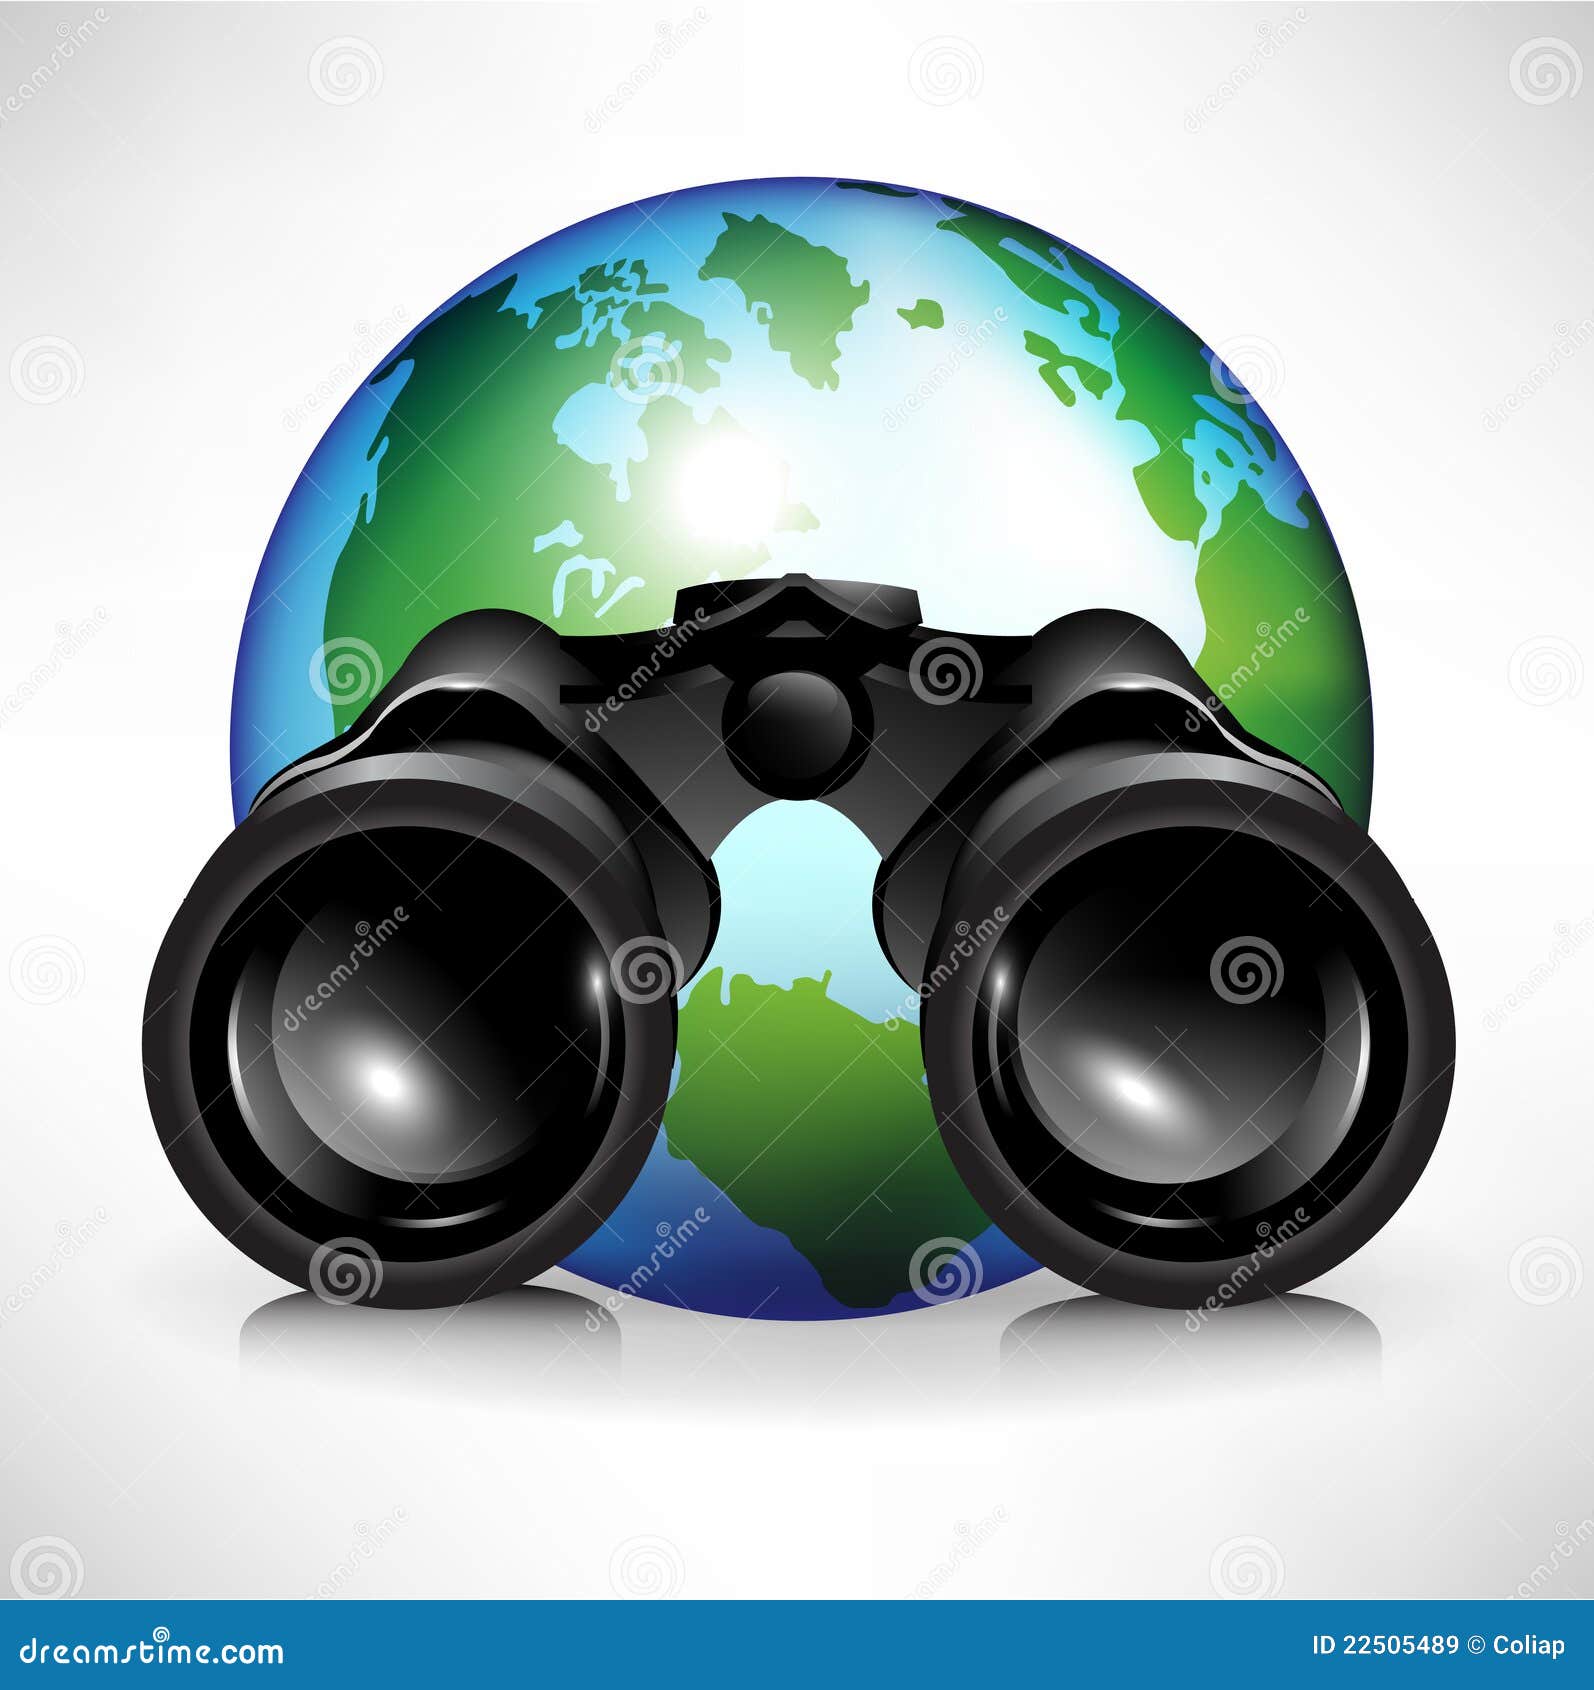 earth globe with binoculars